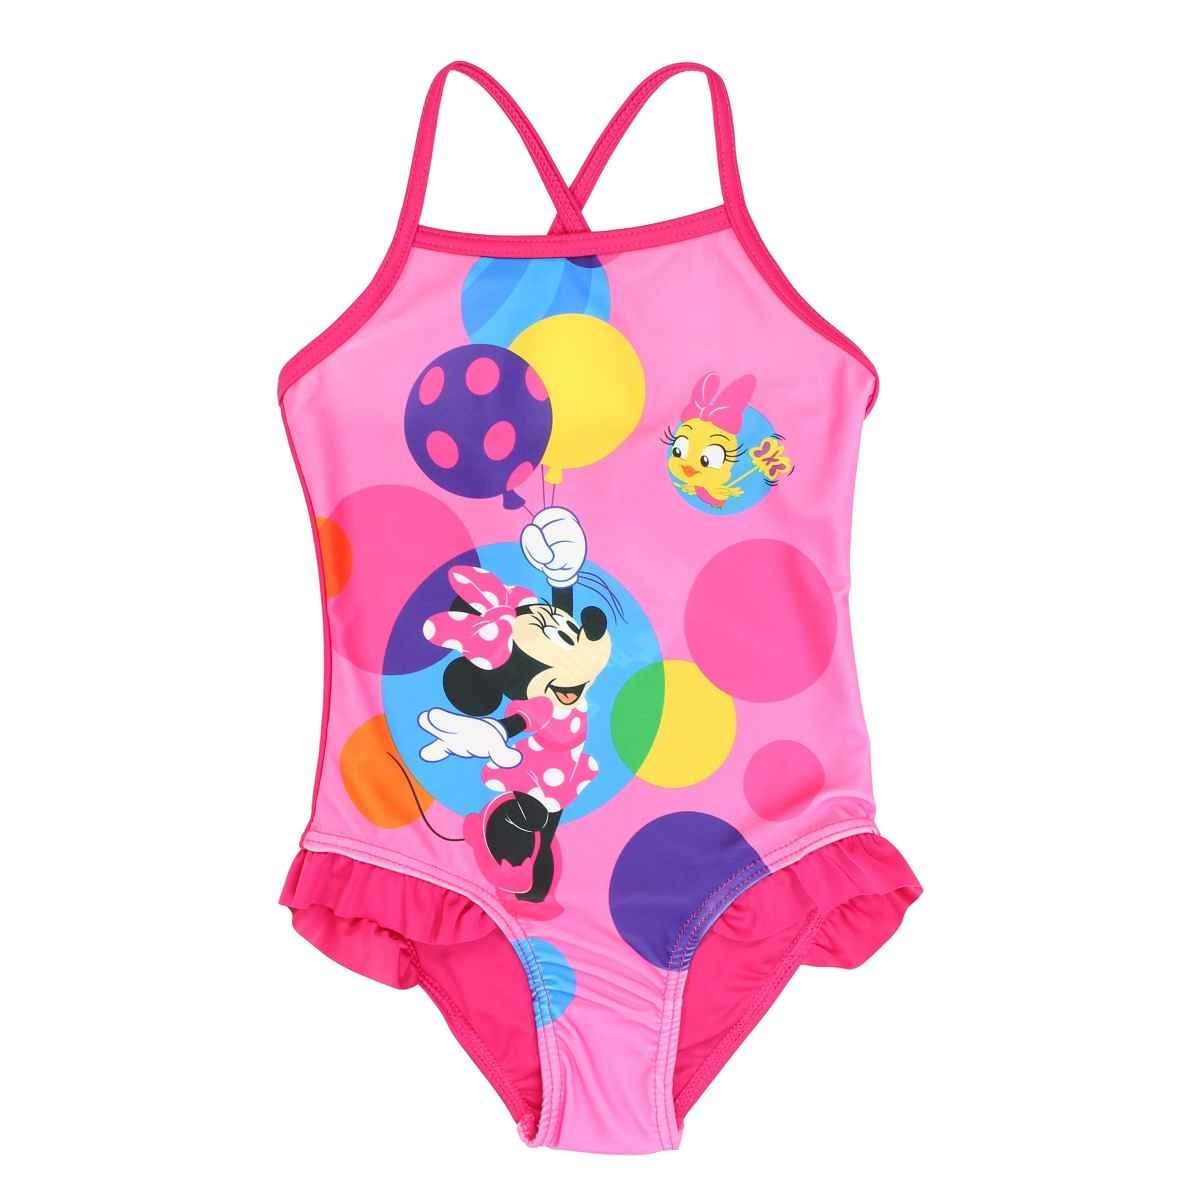 Disney Badeanzug Disney Minnie Maus Kinder Mädchen Badeanzug Bademode Gr.  98 bis 128